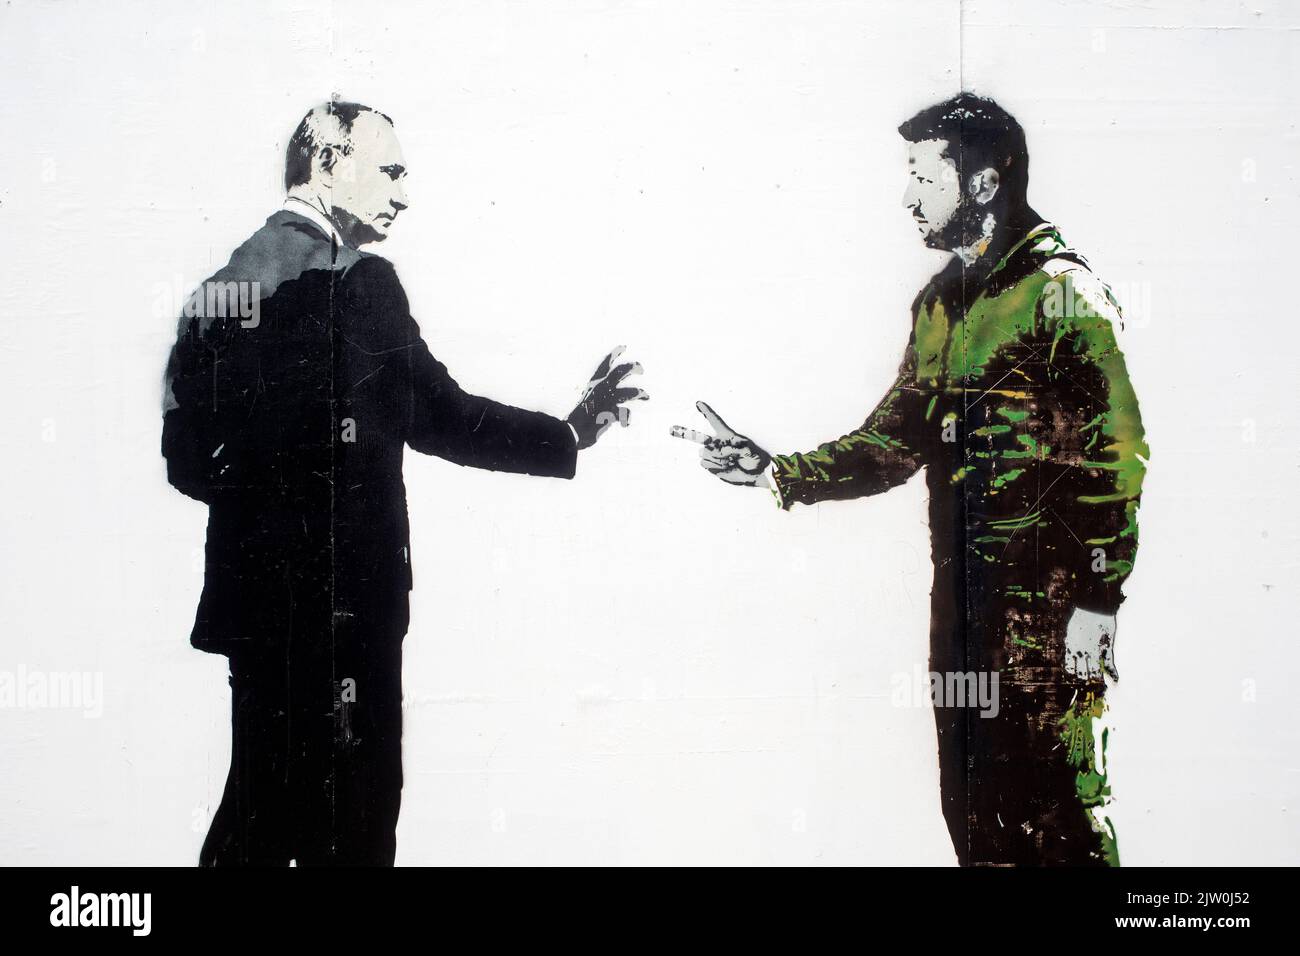 Graffiti zeigt Wladimir Putin und Wolodymyr Zelenski, die sich nach dem russischen Einmarsch in die Ukraine derzeit im Krieg befinden. Stockfoto